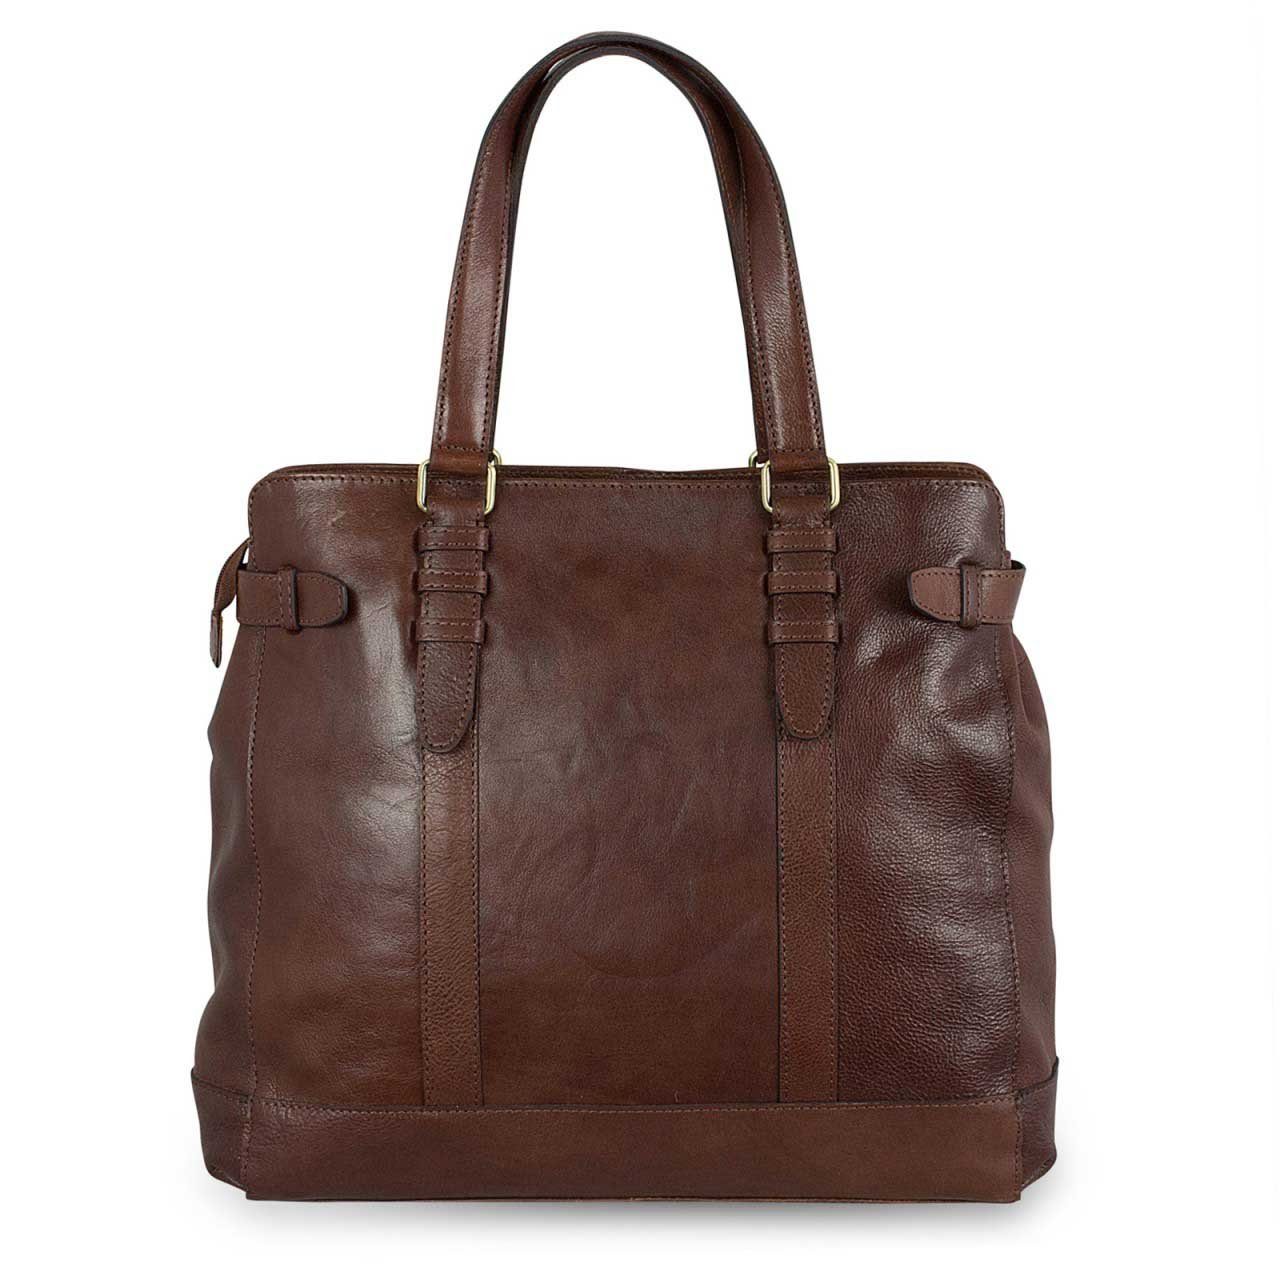 STILORD Handtasche Damen Tasche aus Büffel Leder 34 x 35 x 9 cm Groß dunkel  braun